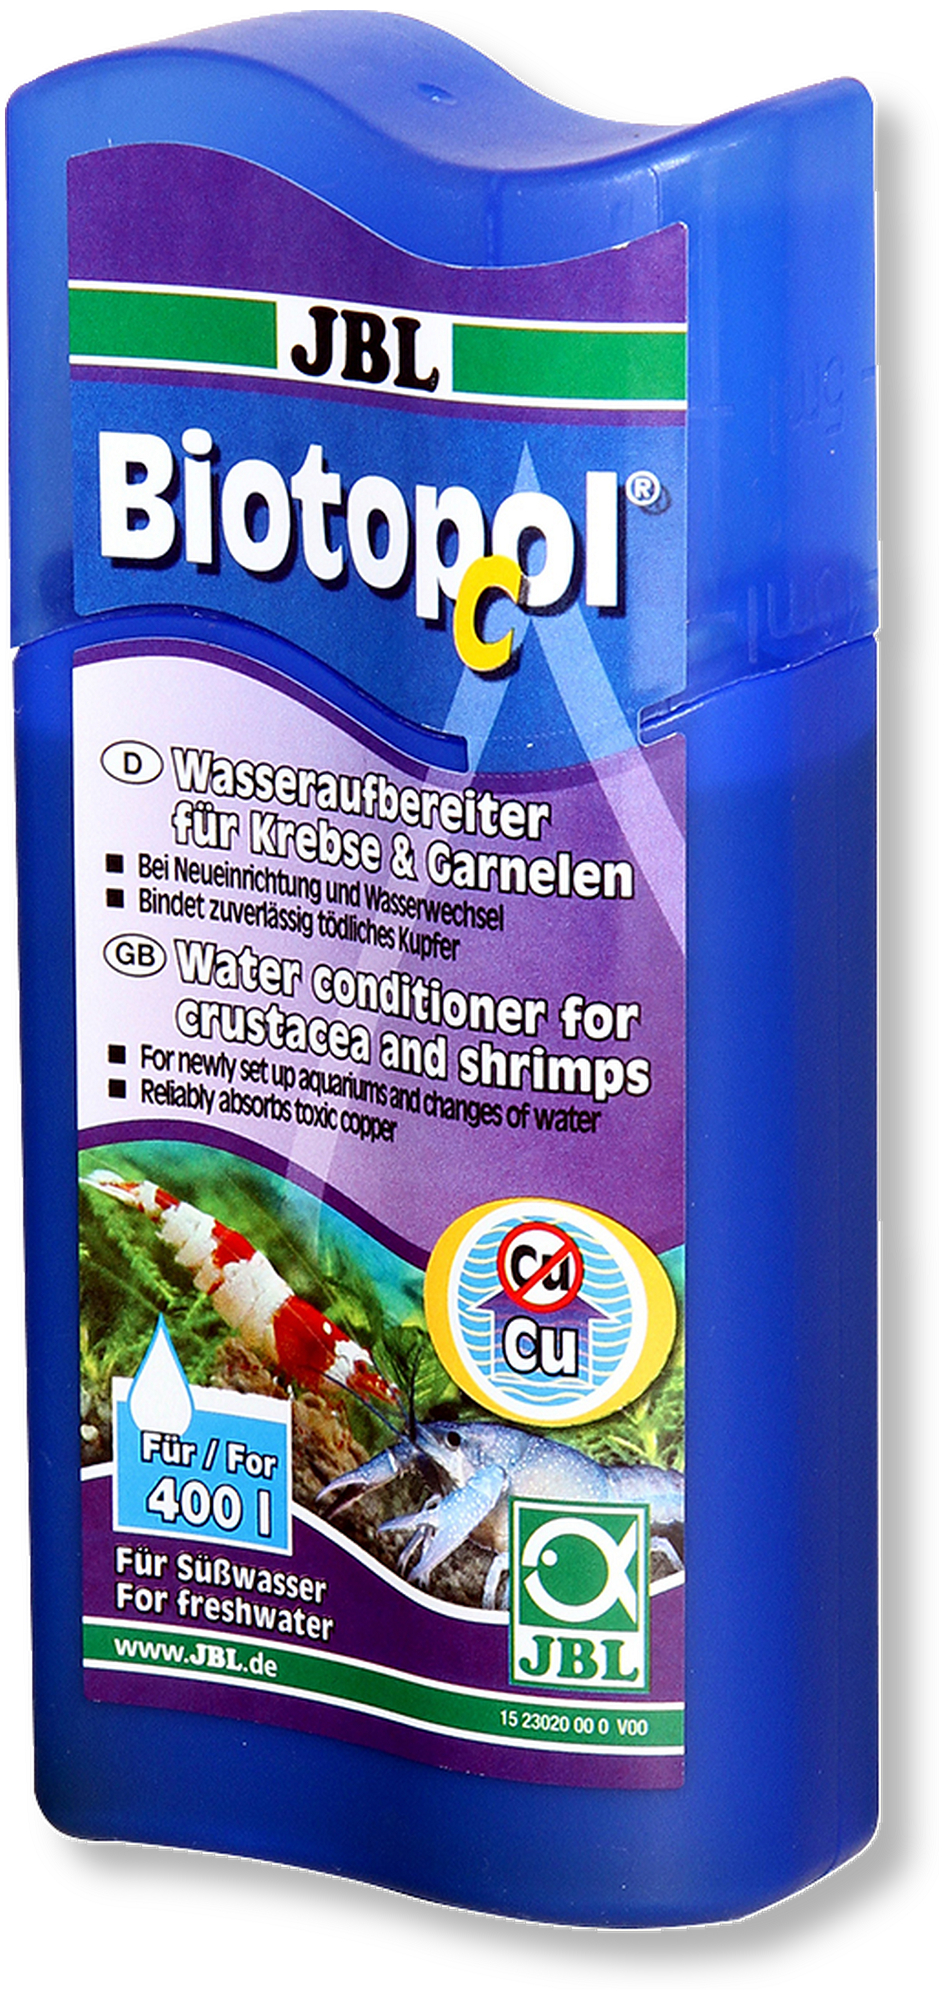 JBL Biotopol C Conditionneur d'eau douce pour crustacés